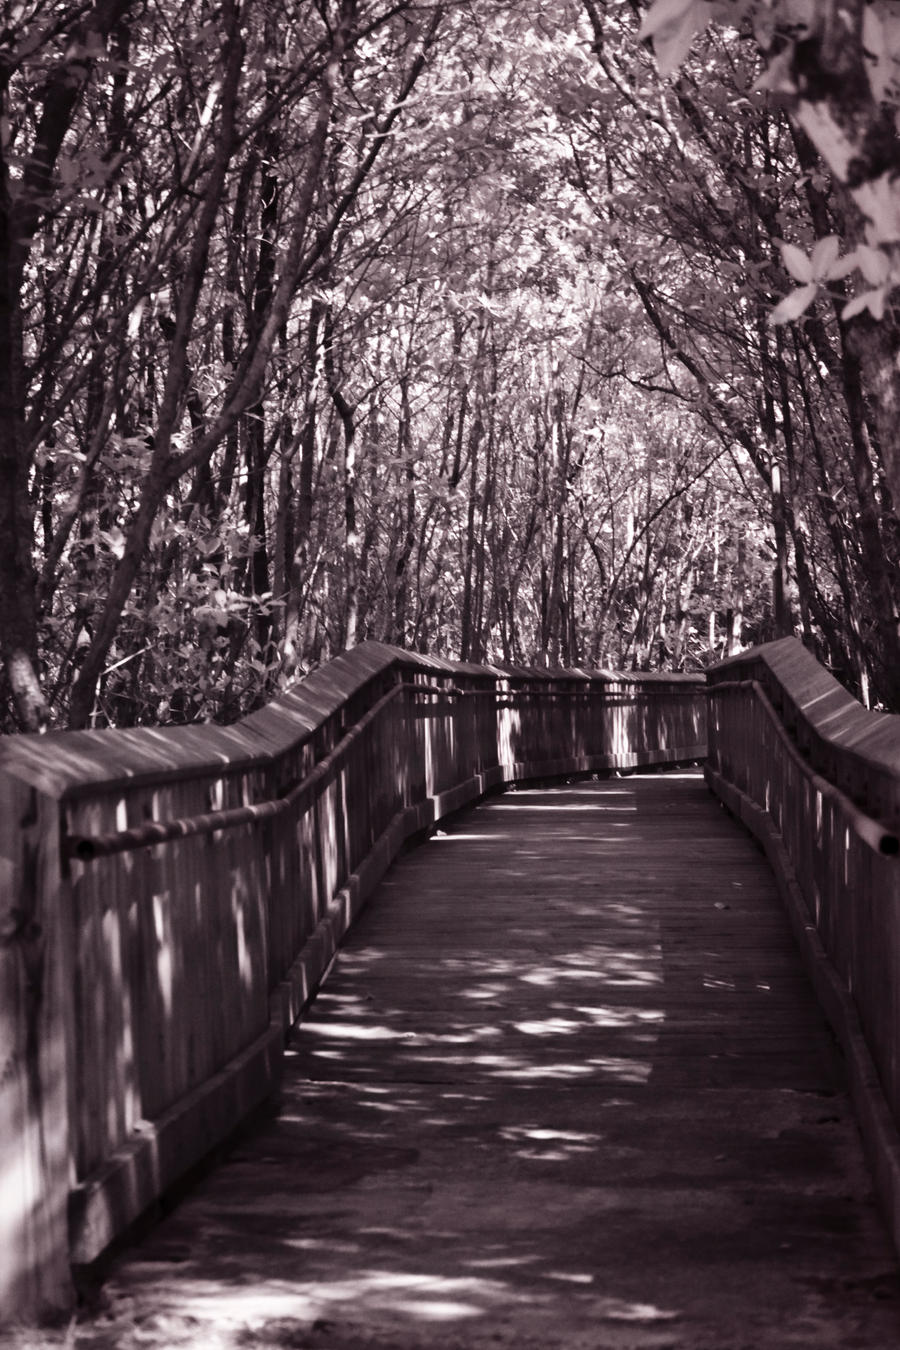 Path through the Mangroves